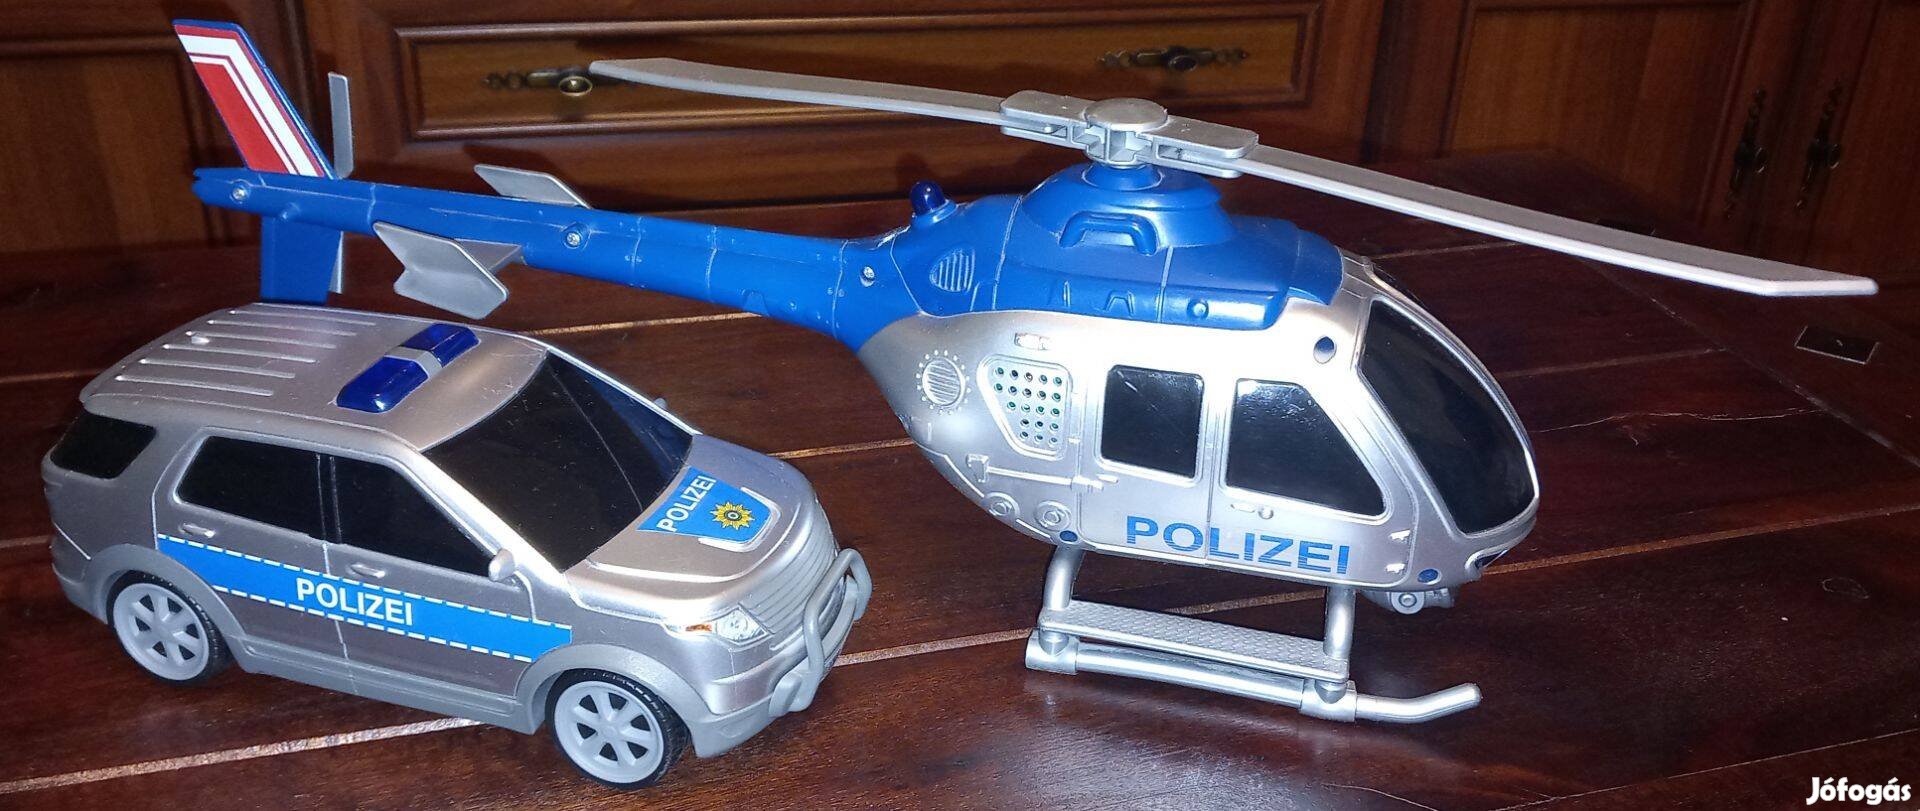 Eladó Dickie Toys márkájú 21cm-es rendőrautó és 41cm-es helikopter sze